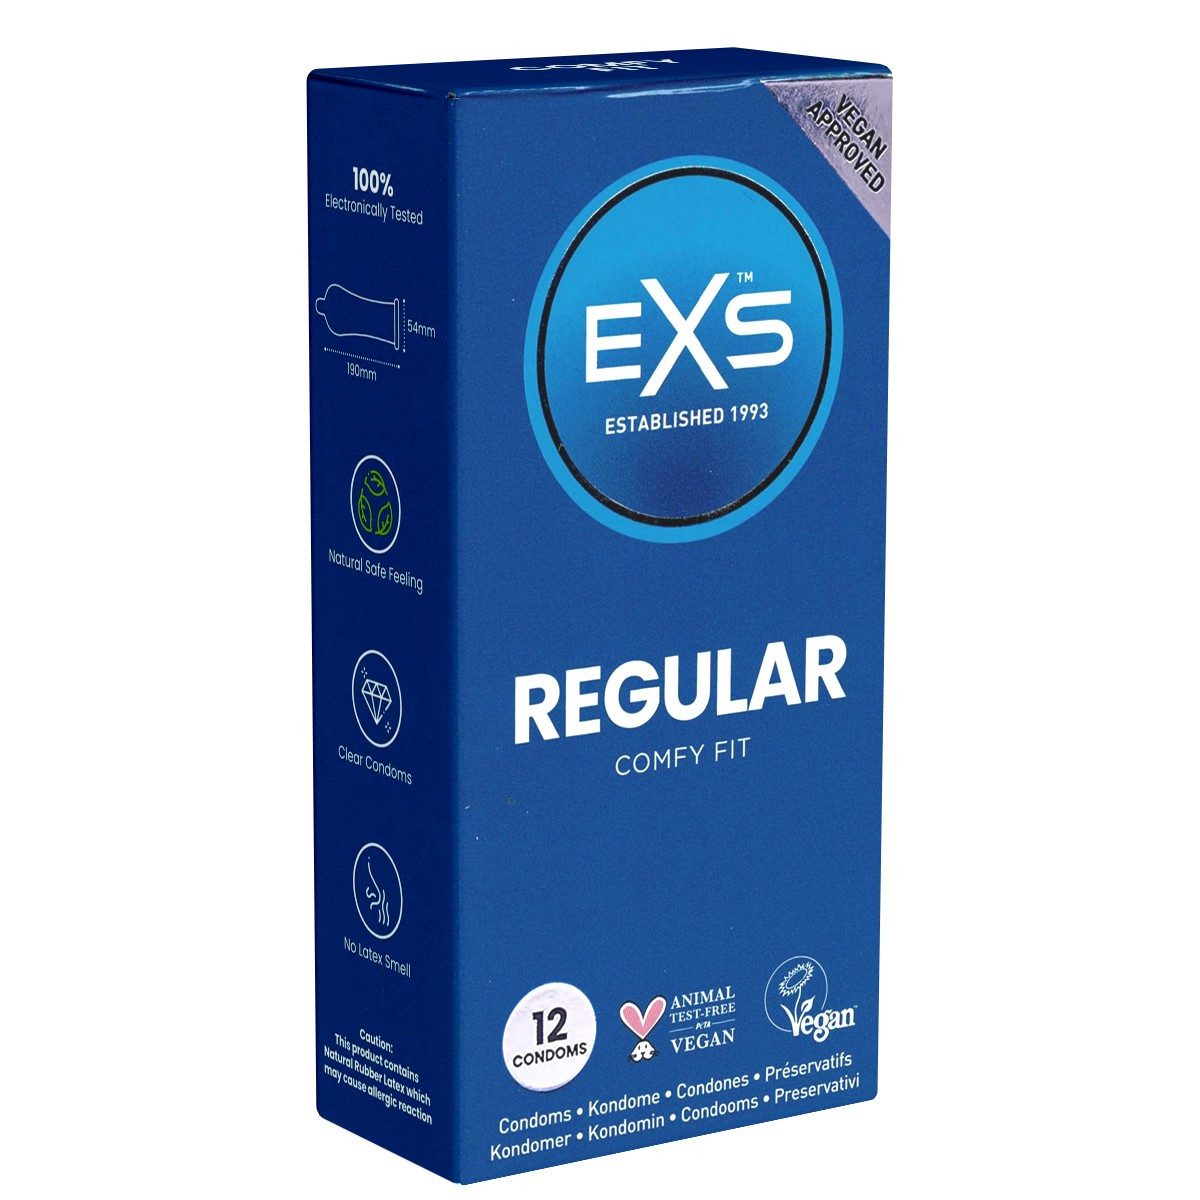 EXS Kondome Regular Comfy Fit - bequeme Kondome Packung mit, 12 St., Standardkondome aus Latex, Comfort-Form, mit Feuchtbeschichtung und großem Kopfteil